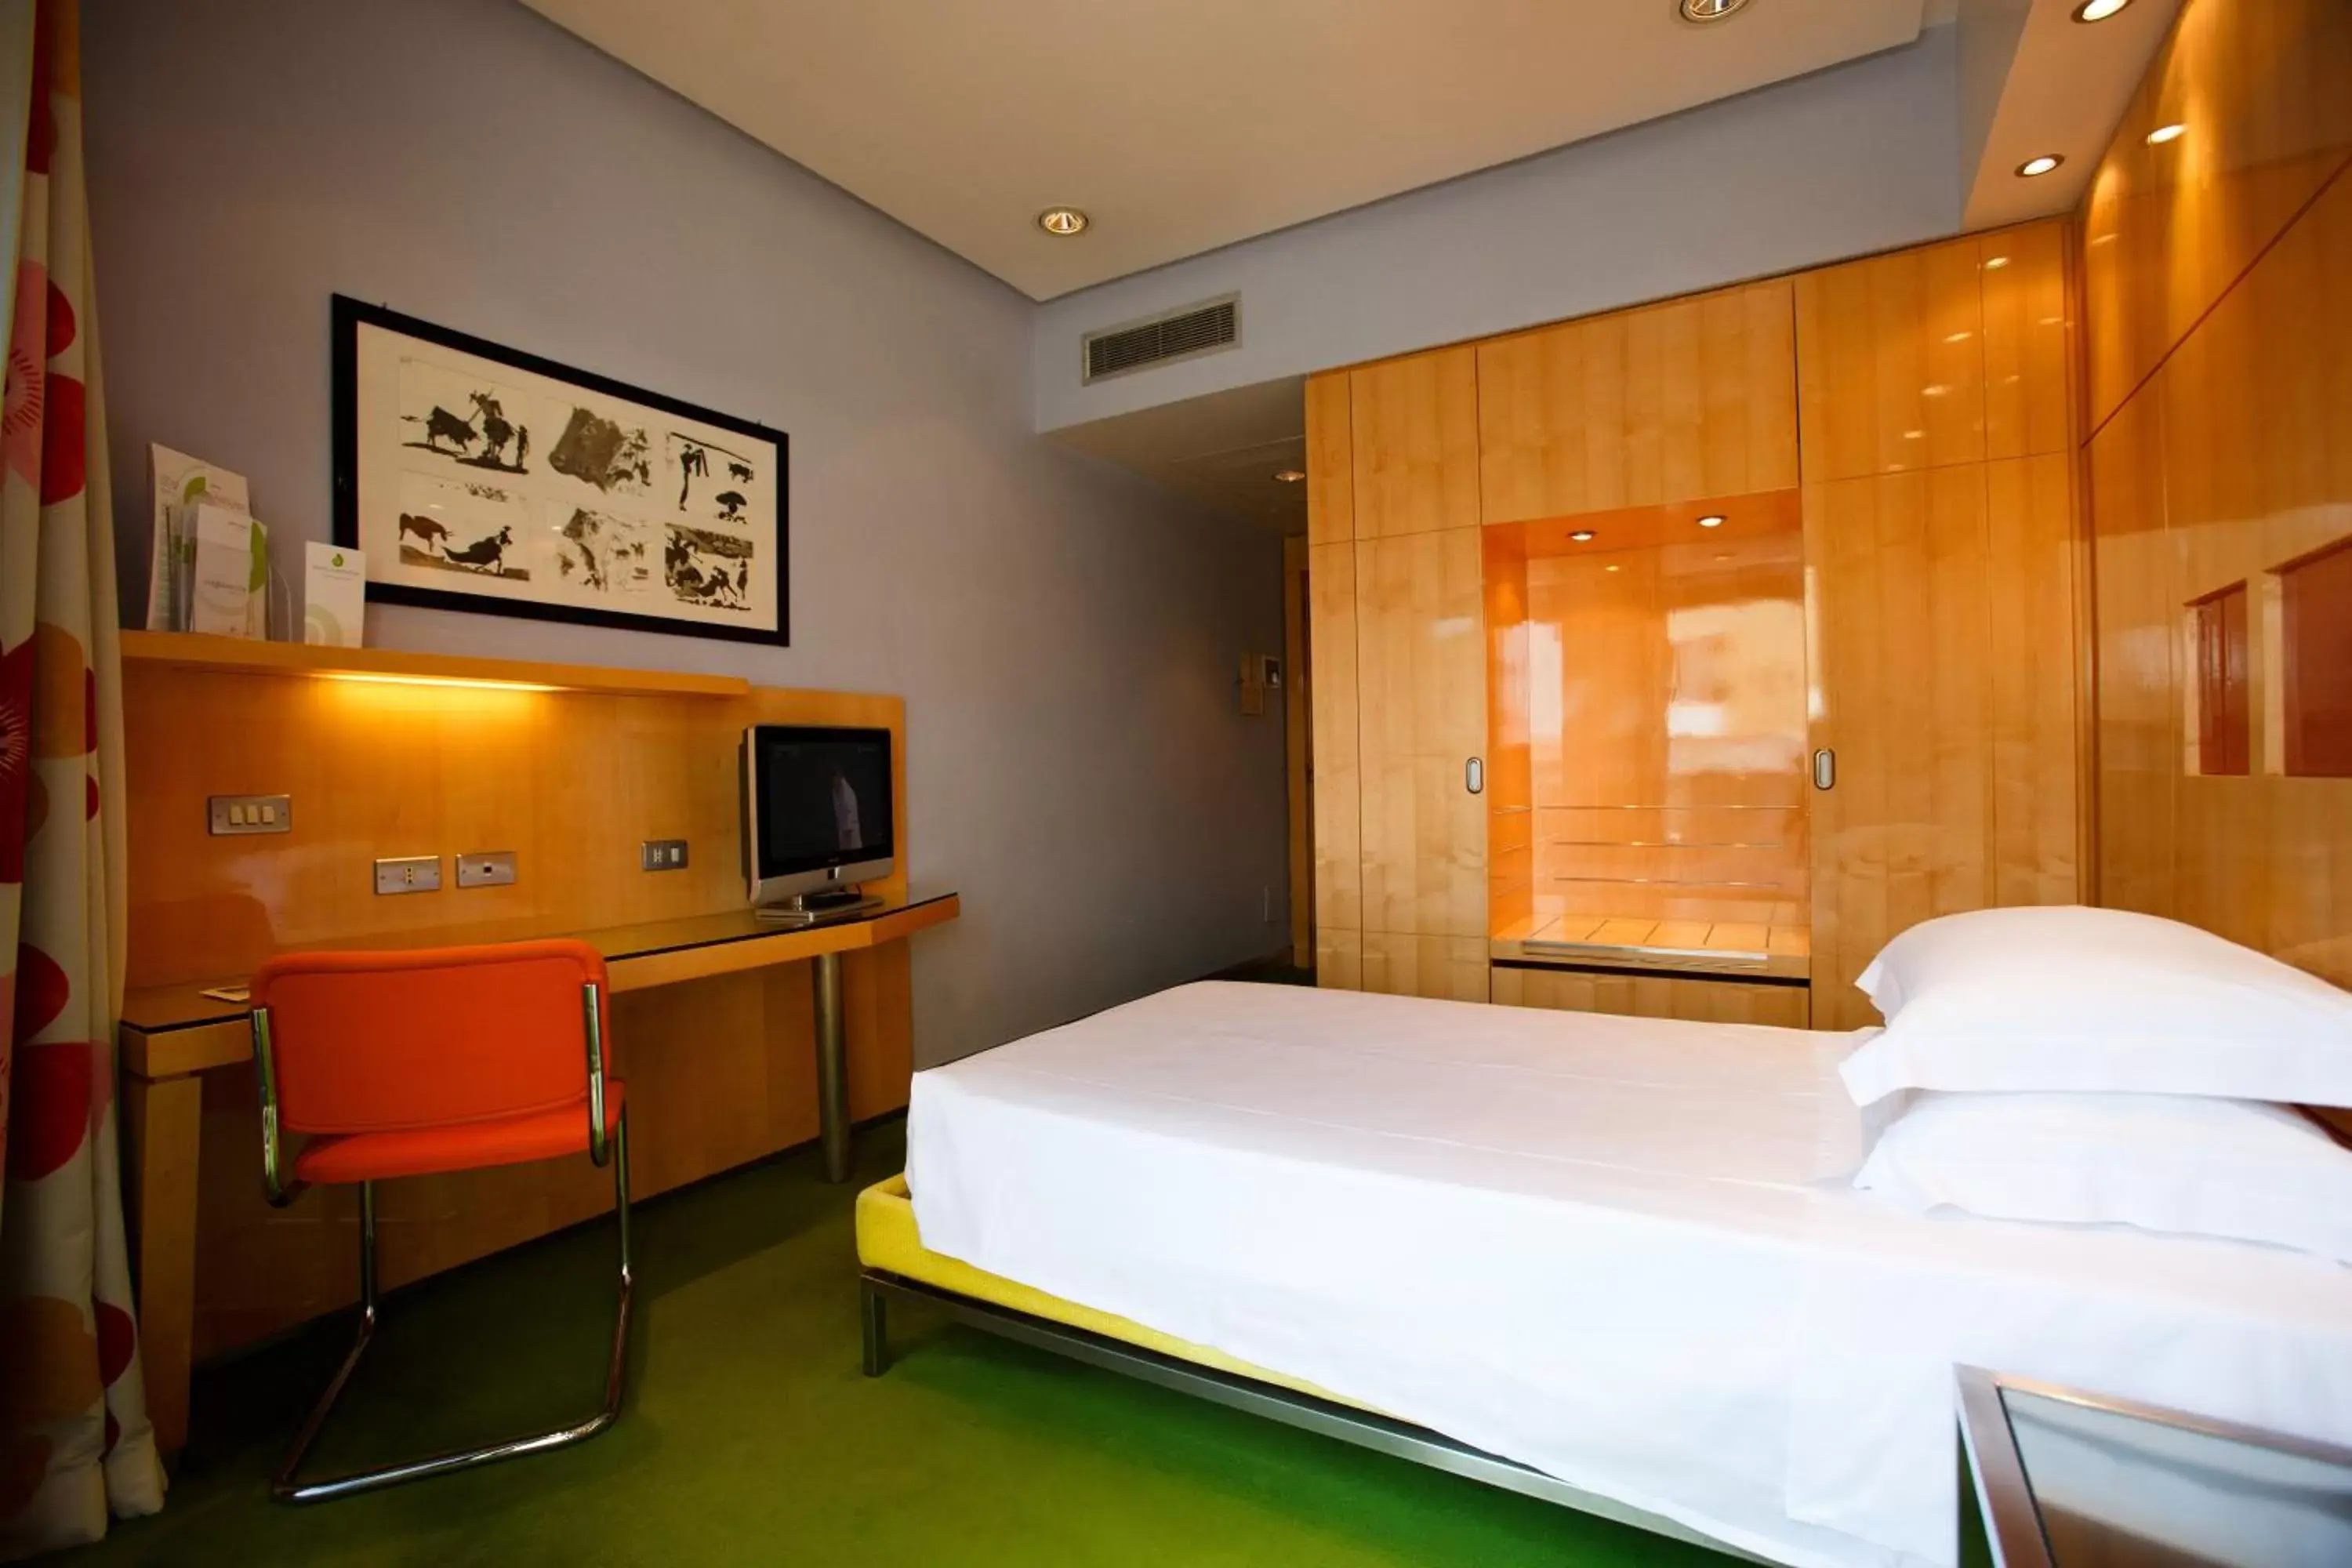 Bedroom, Bed in Albani Hotel Roma